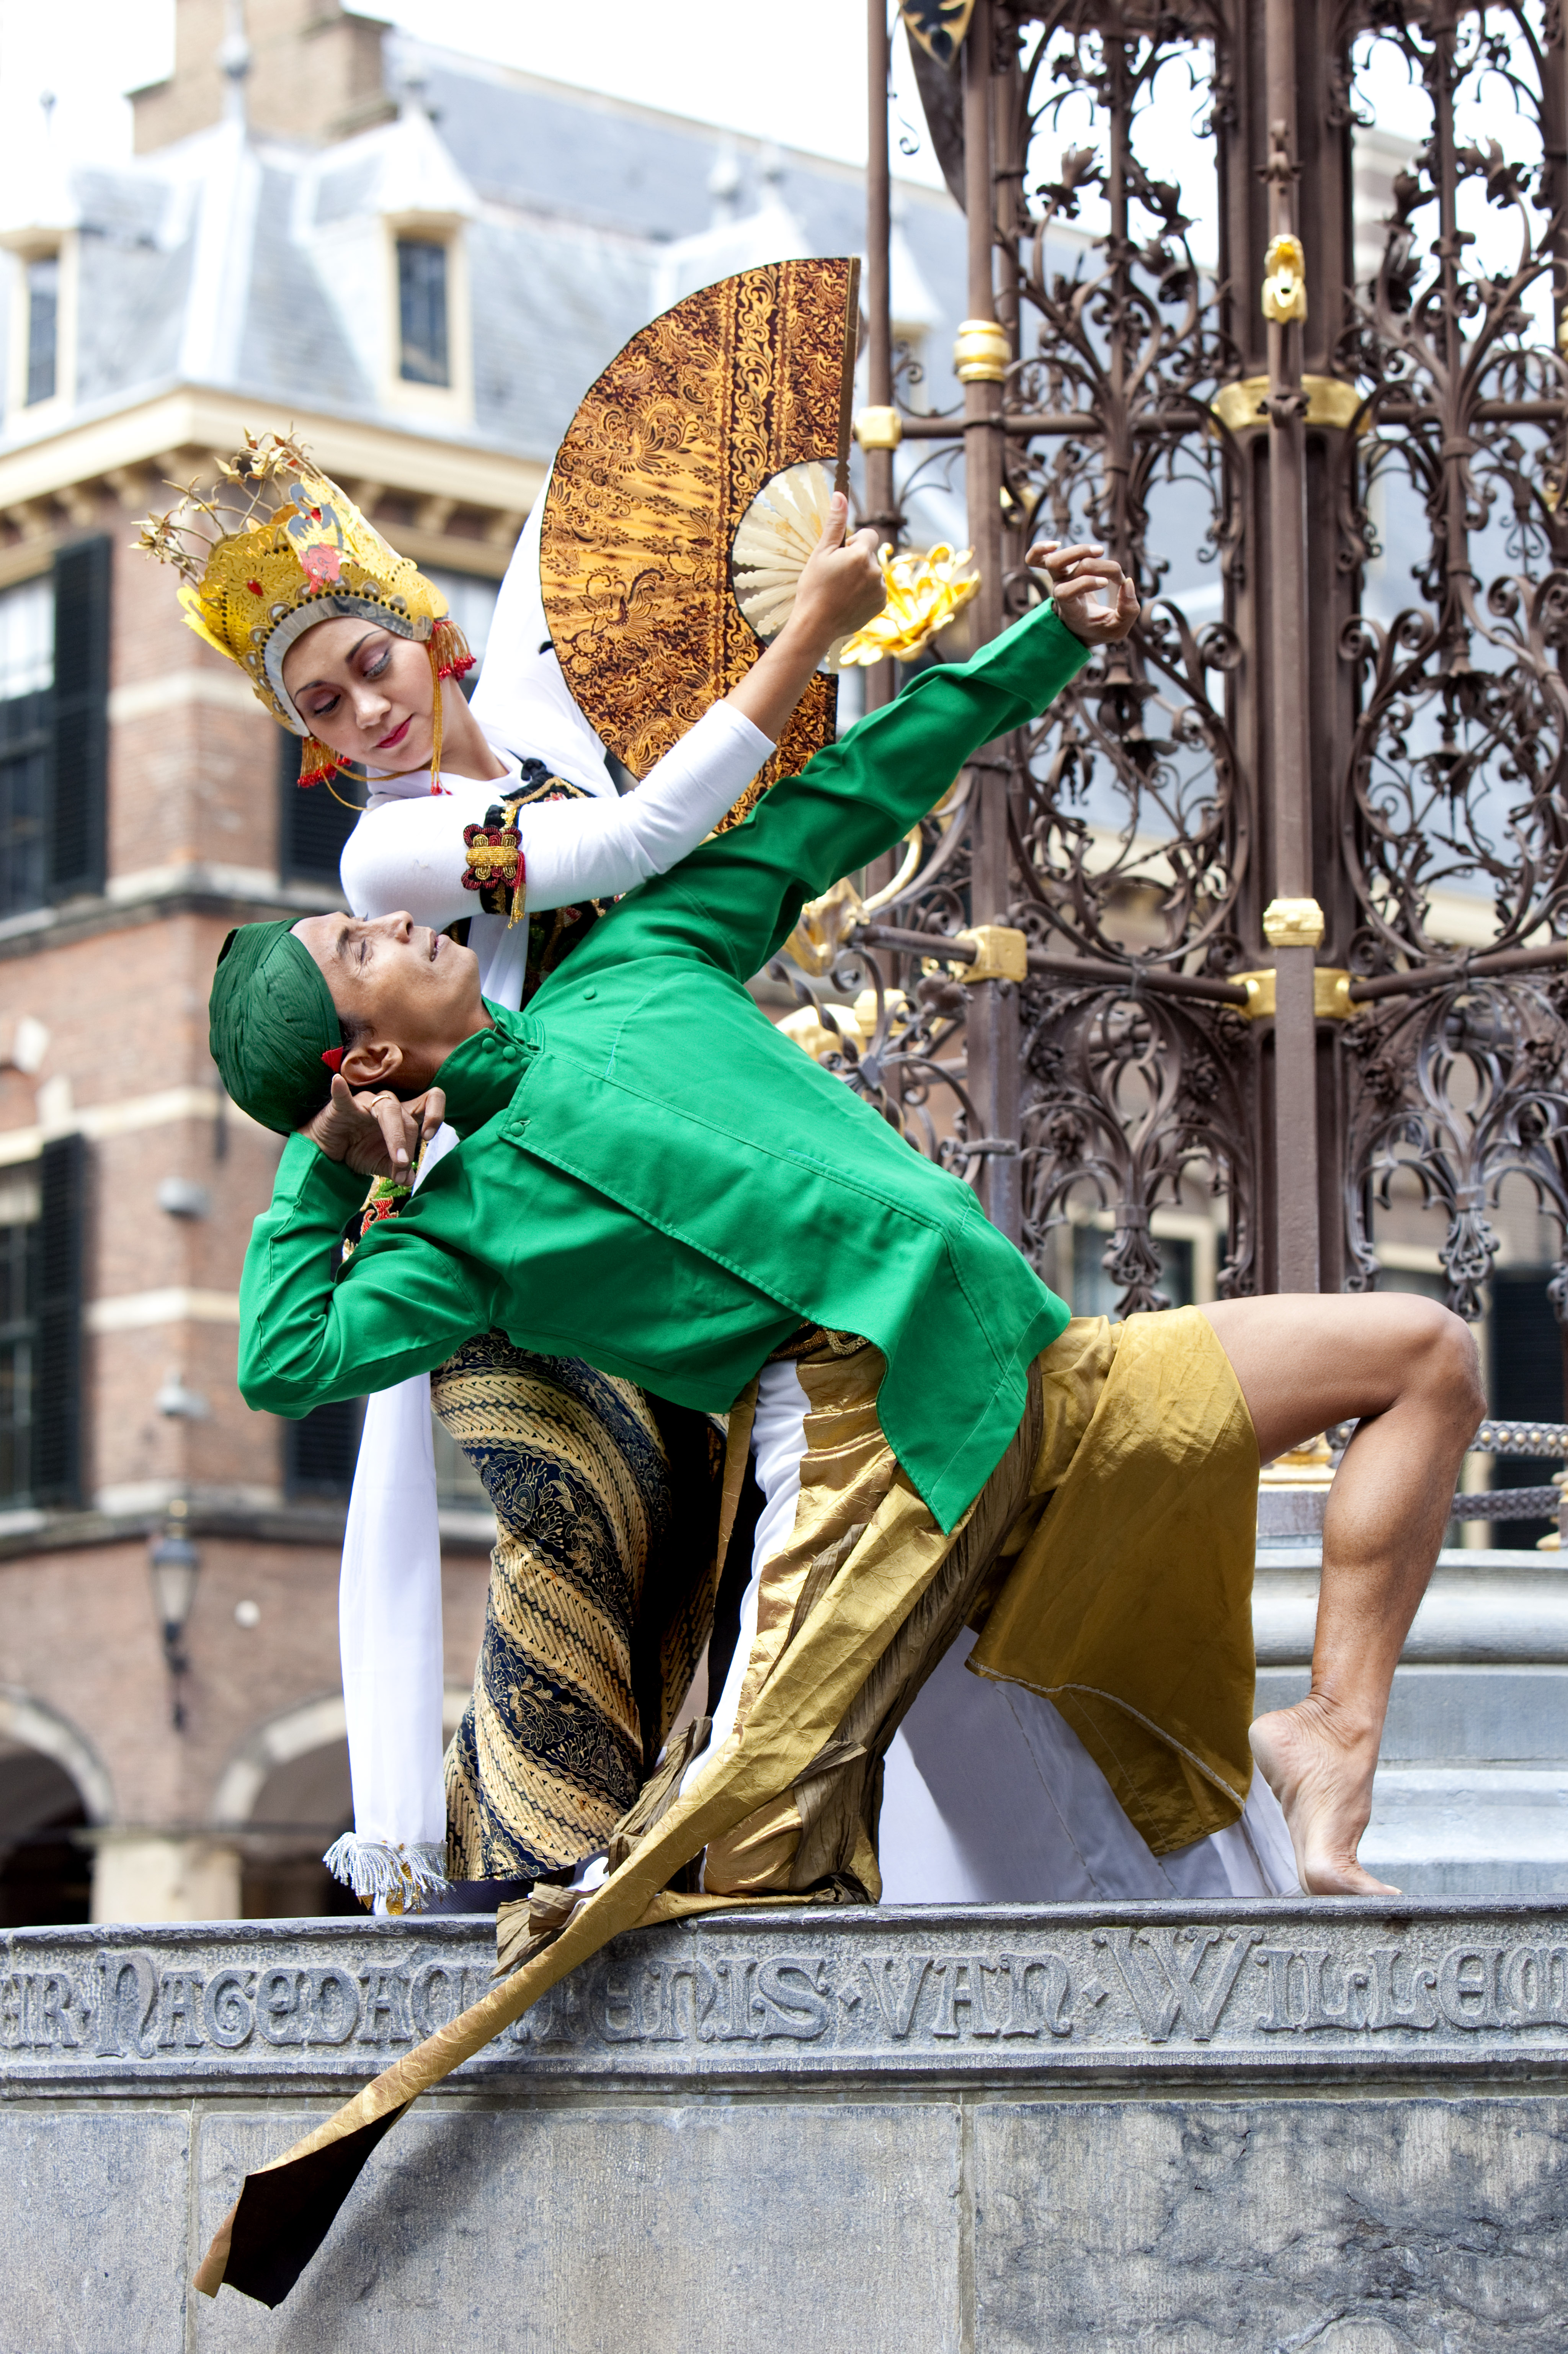 Indonesische dans van Agung Gunawan en Deasylina da Ary op het Binnenhof van Den Haag